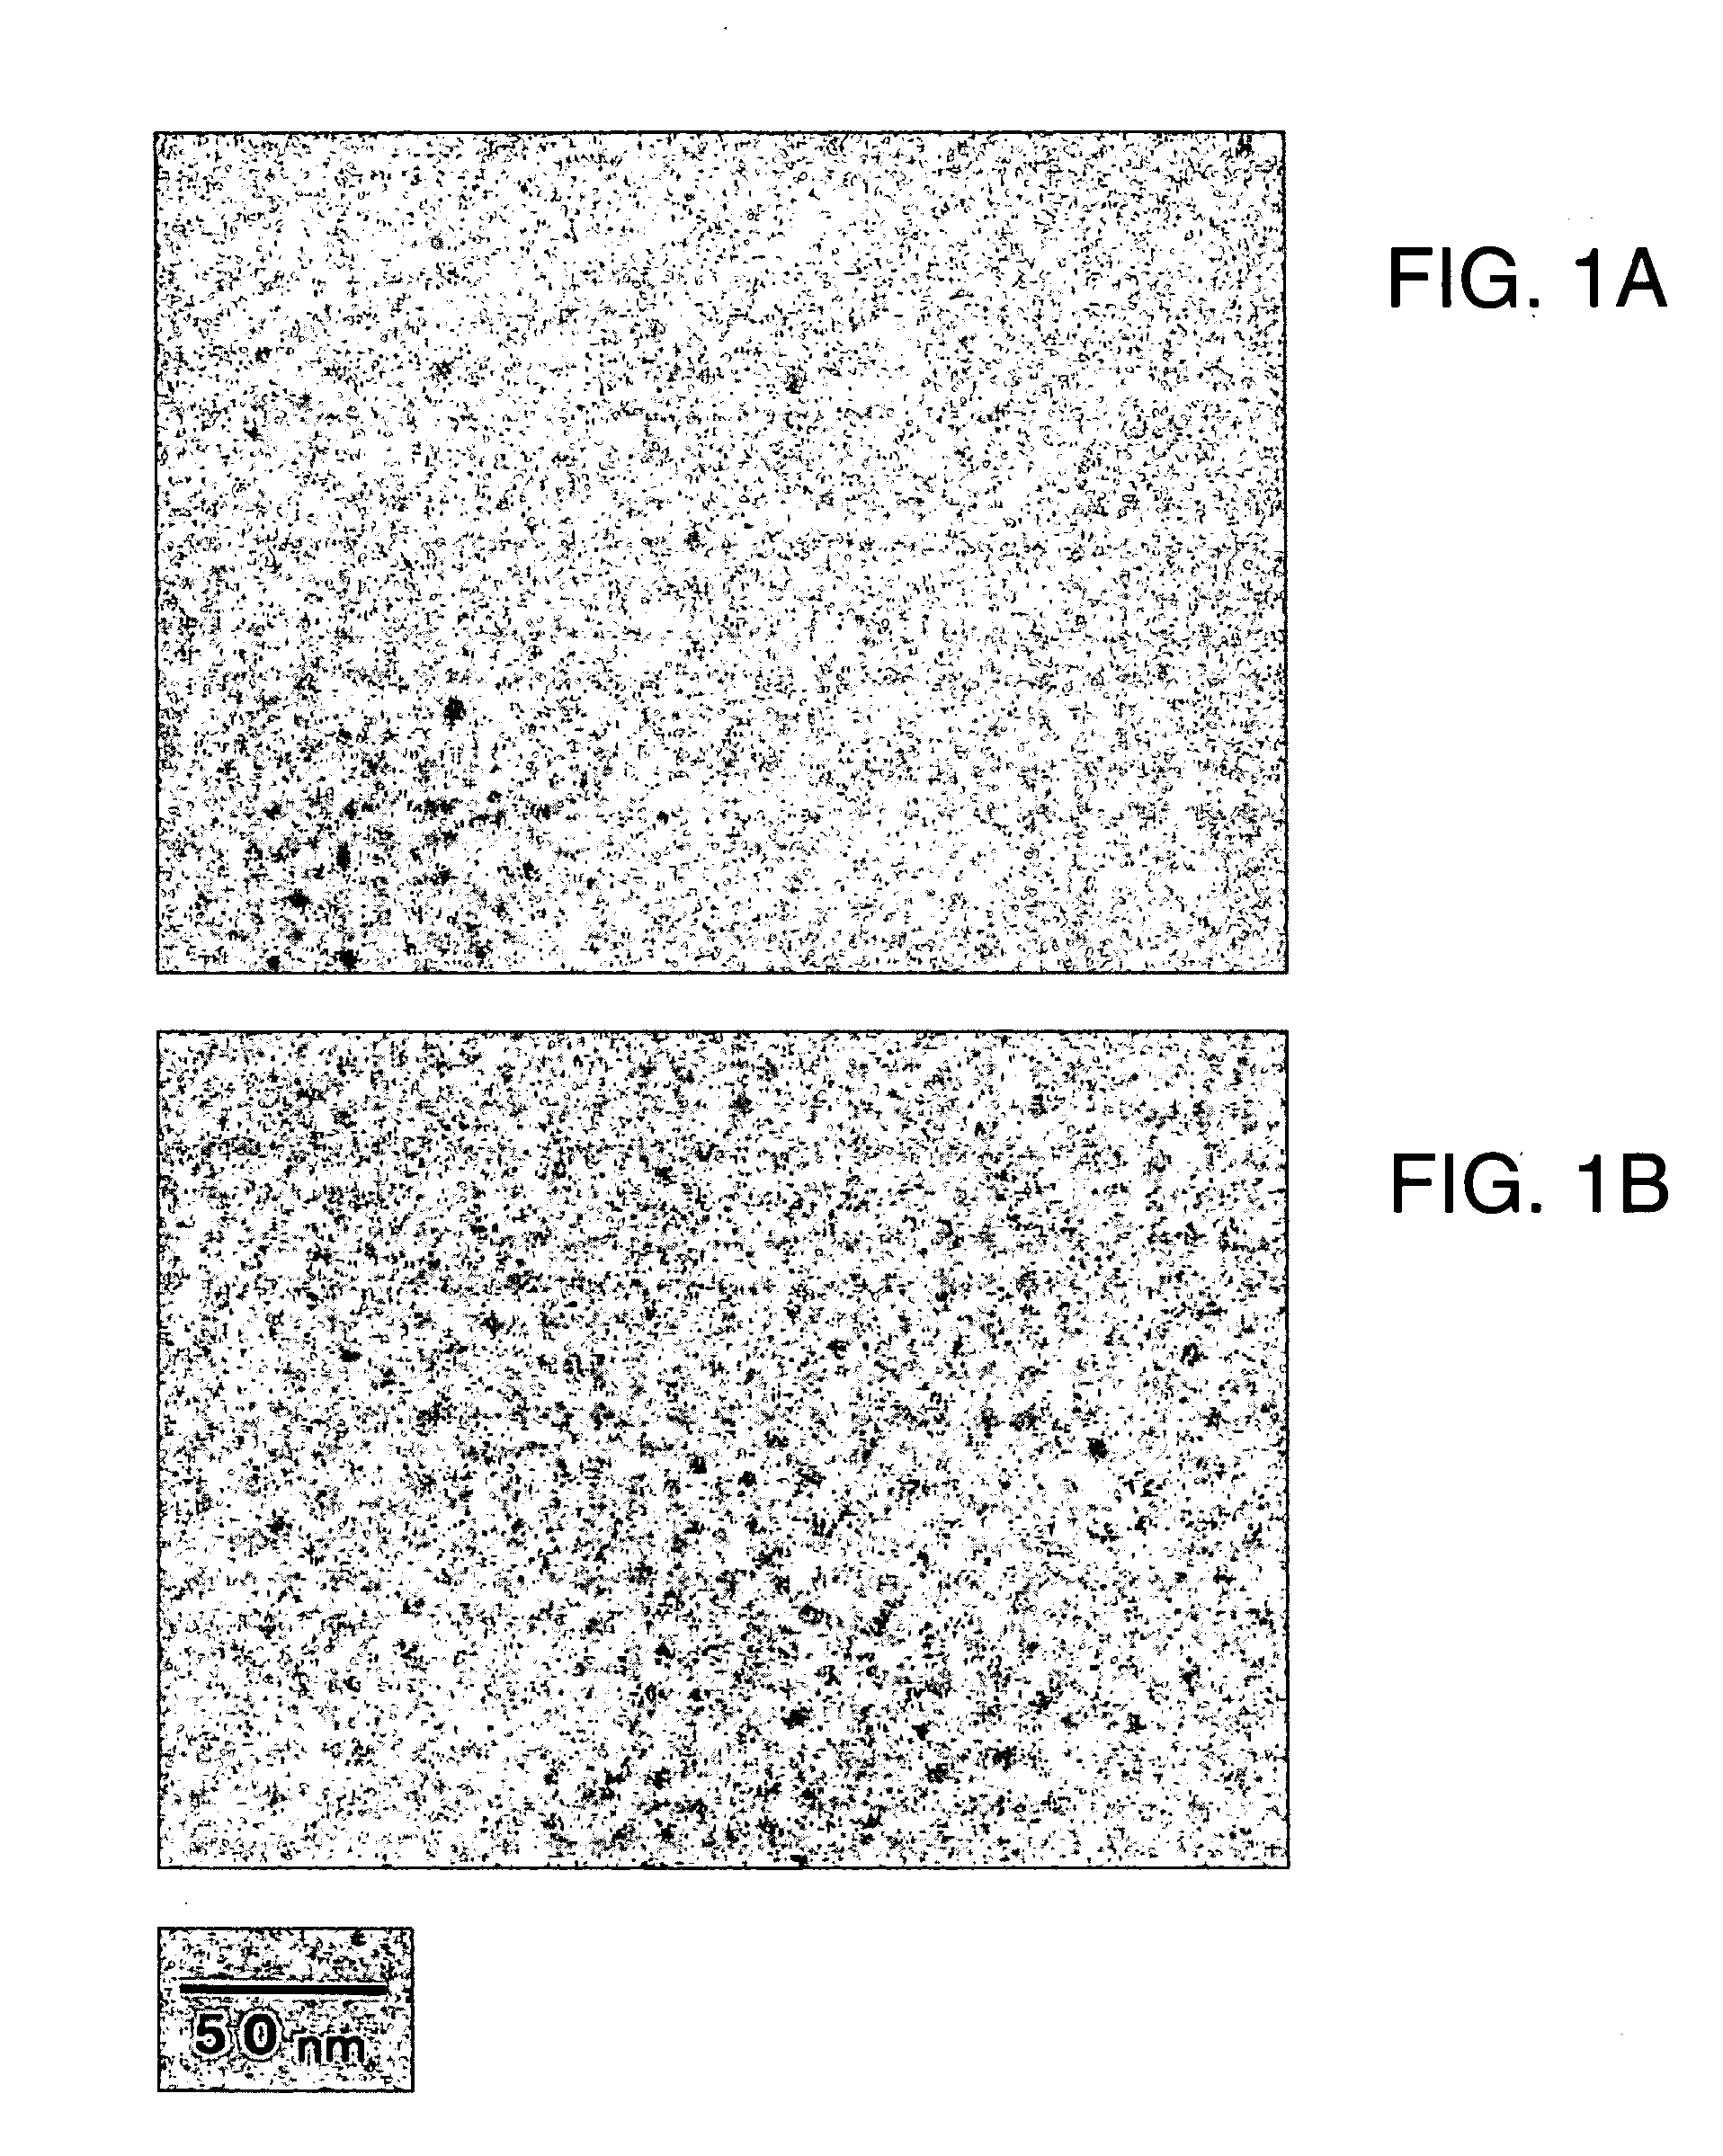 Ion-exchange fluororesin membrane